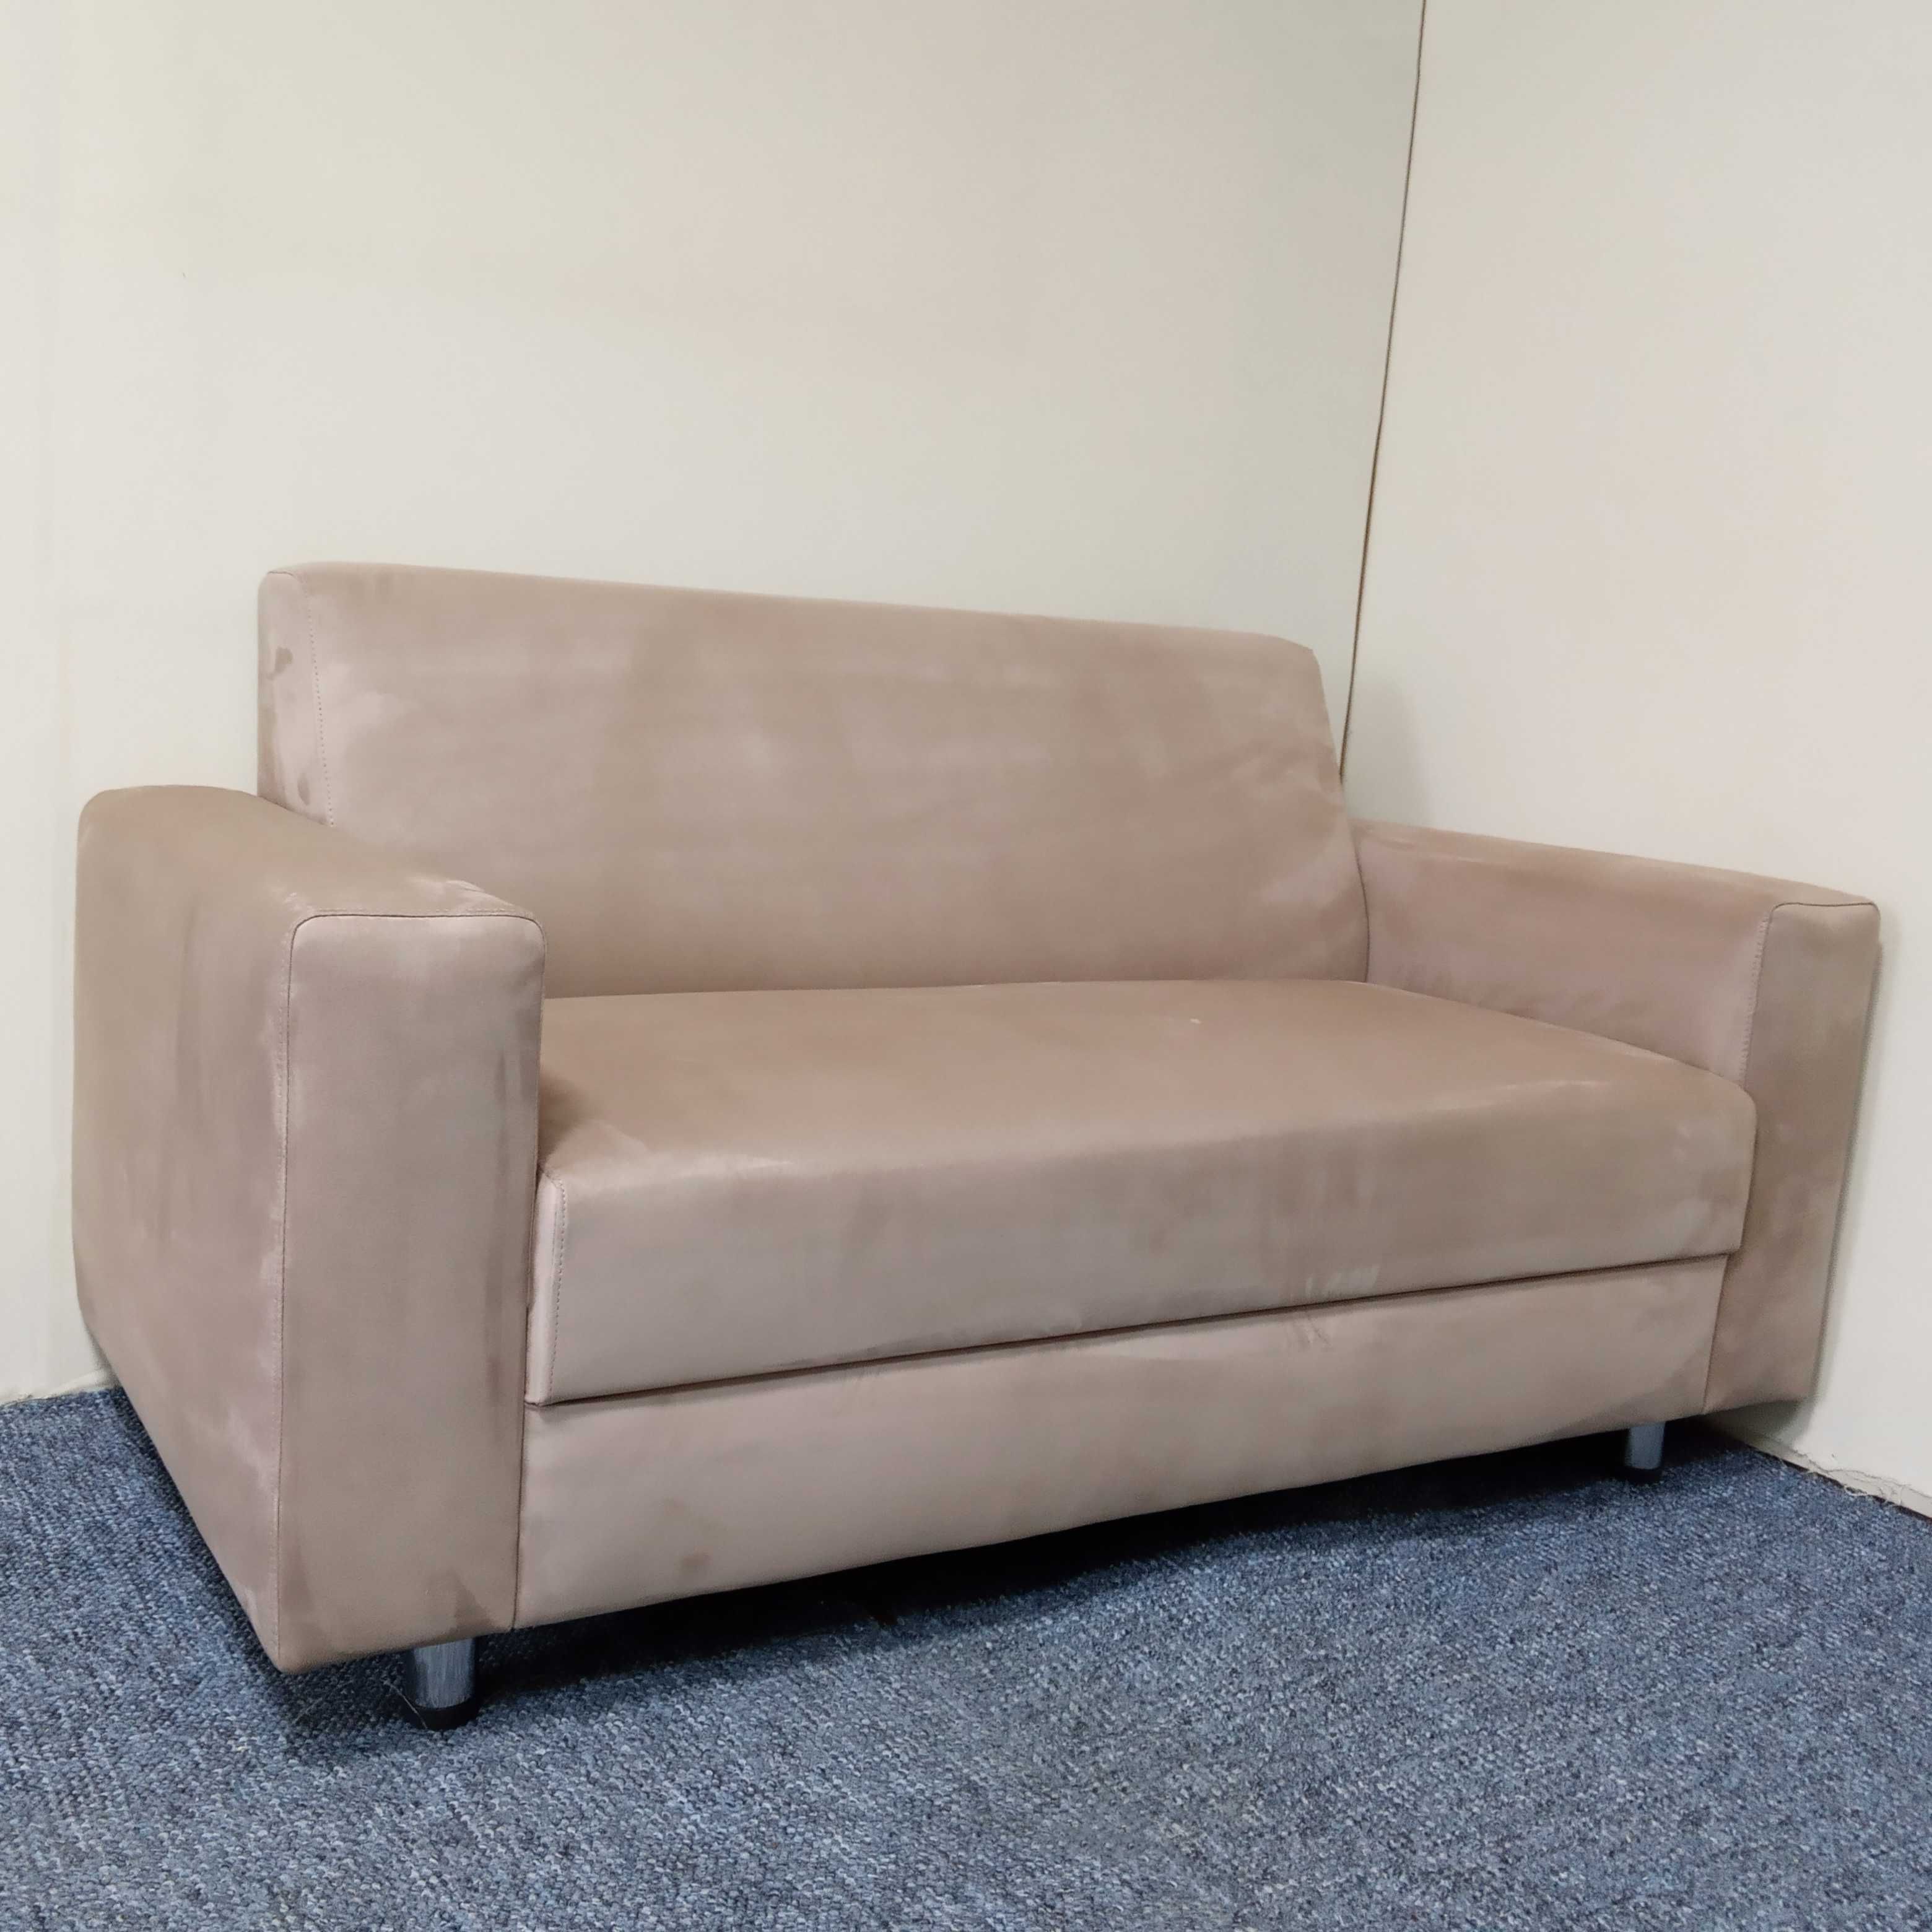 Офисный диван кресло в кожзаме любые цвета, офісний диван для офиса